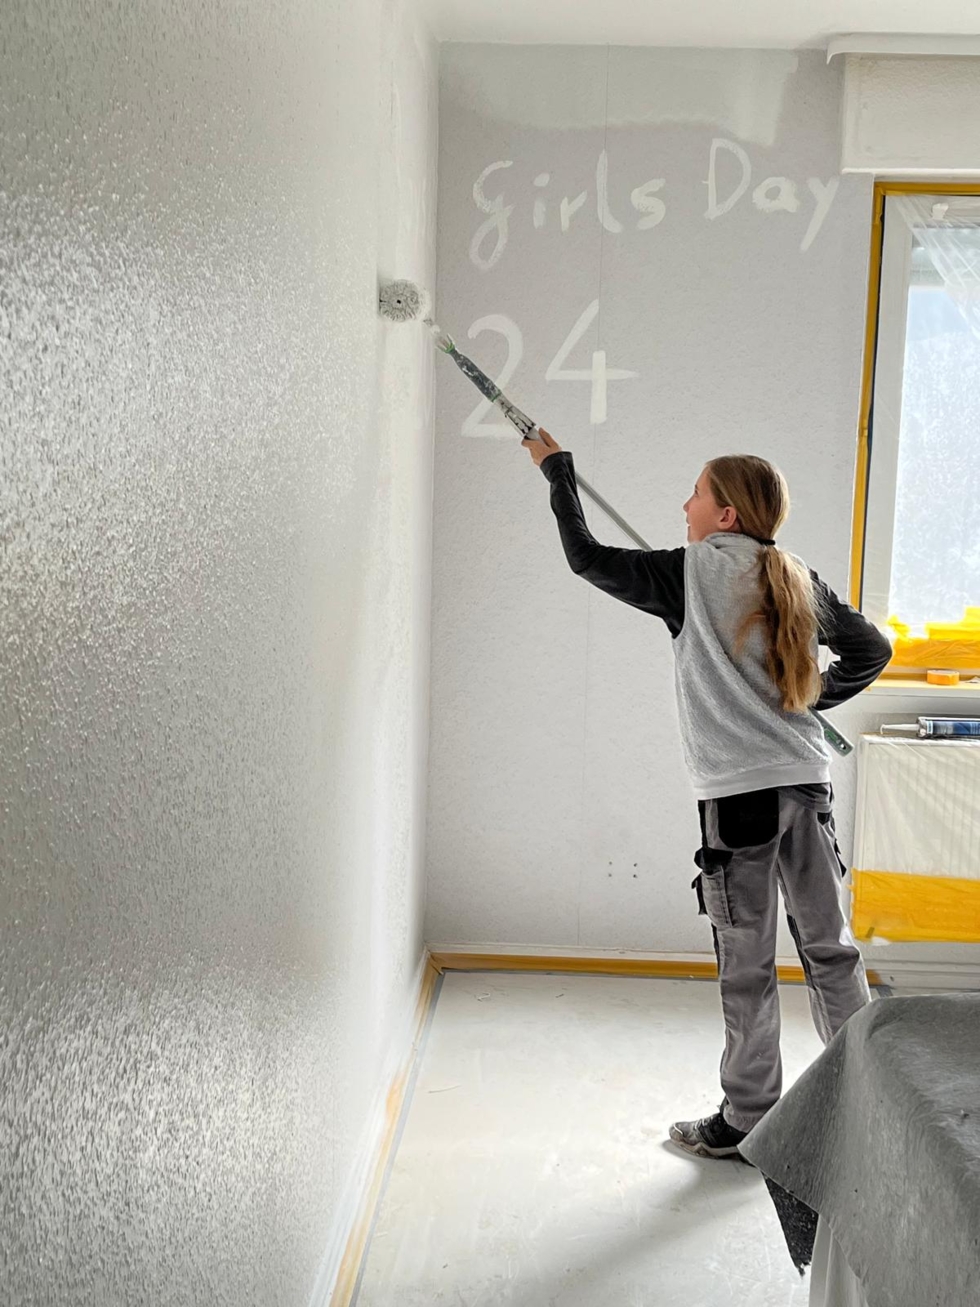 Girls'Day-Teilnehmerin malt Girls'Day an die Wand